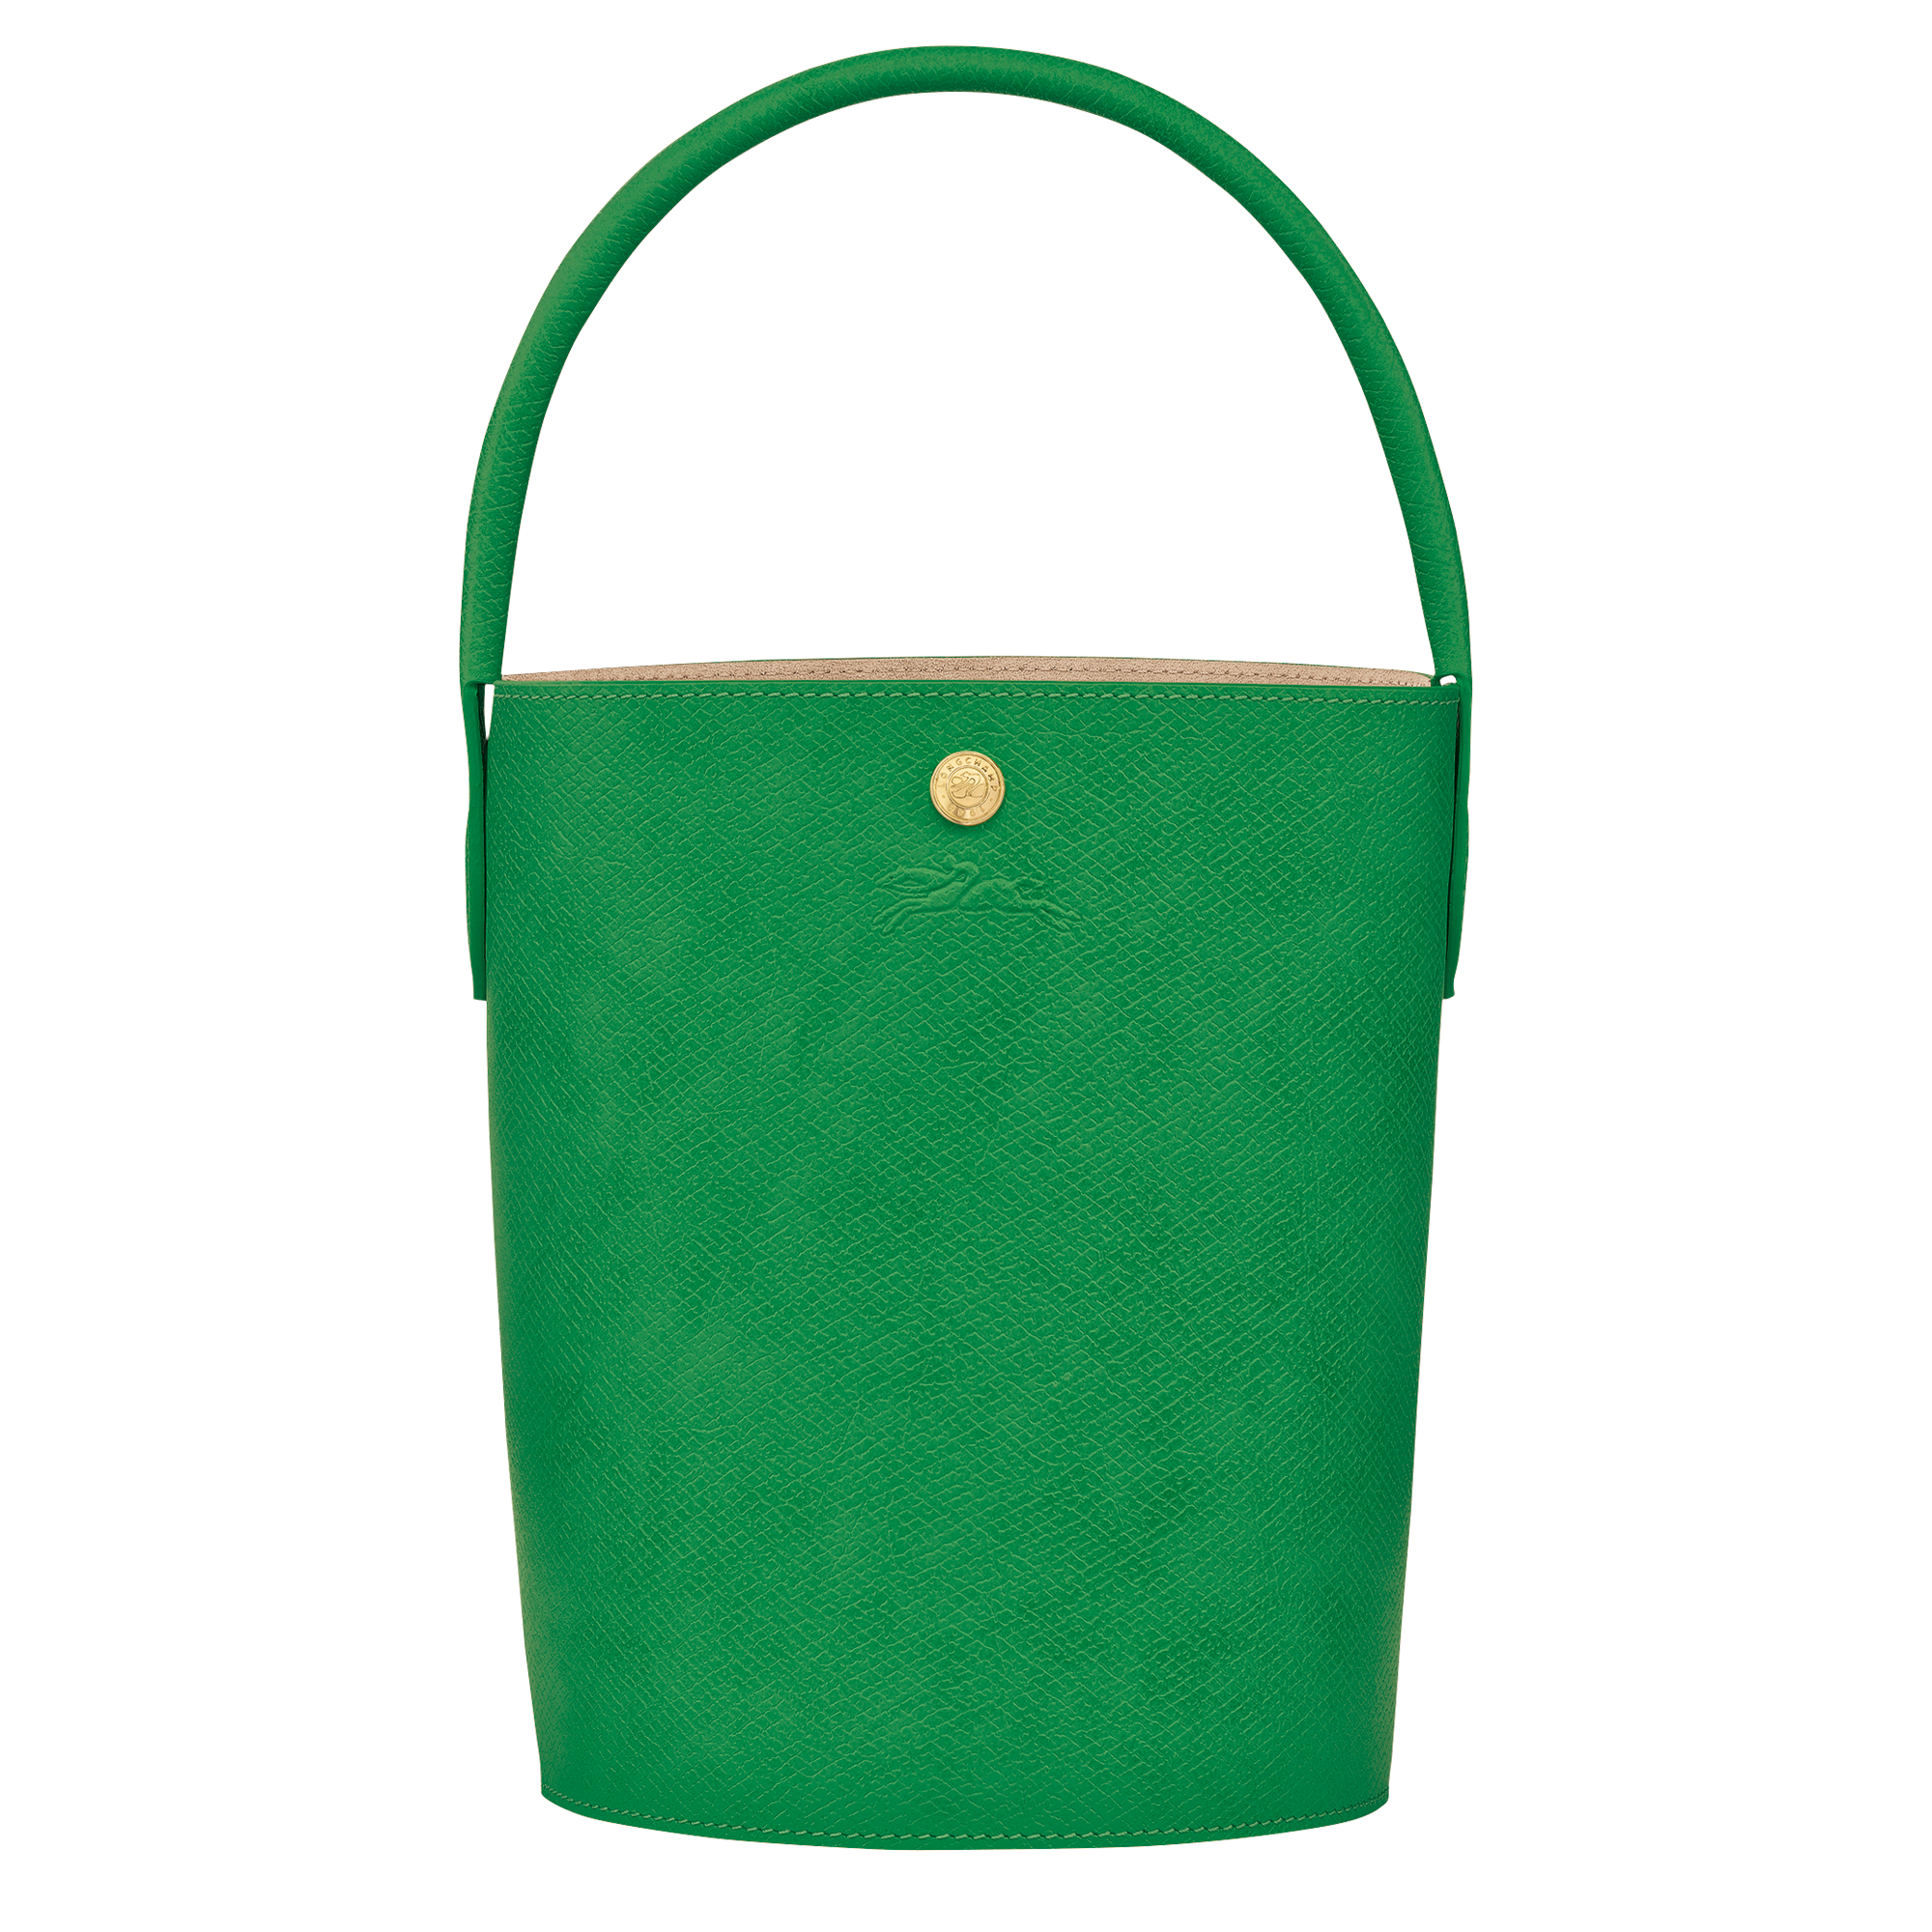 Épure Bolso saco S, Verde